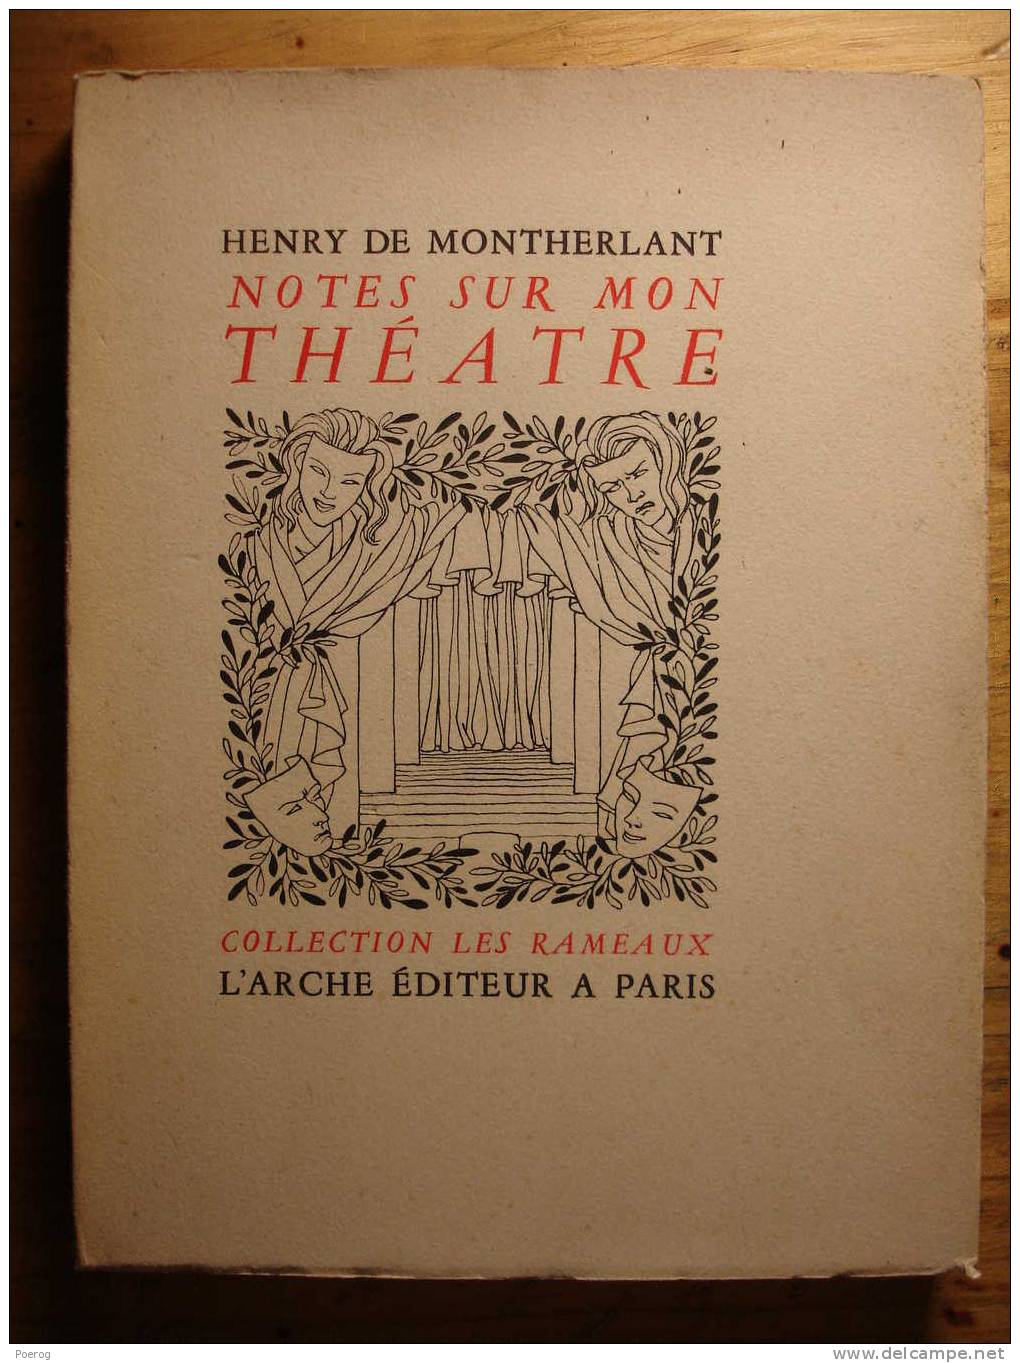 HENRY DE MONTHERLANT - NOTES SUR MON THEATRE - L'ARCHE EDITEUR - 1950 - Velin Alfa Navarre Numéroté - Franse Schrijvers